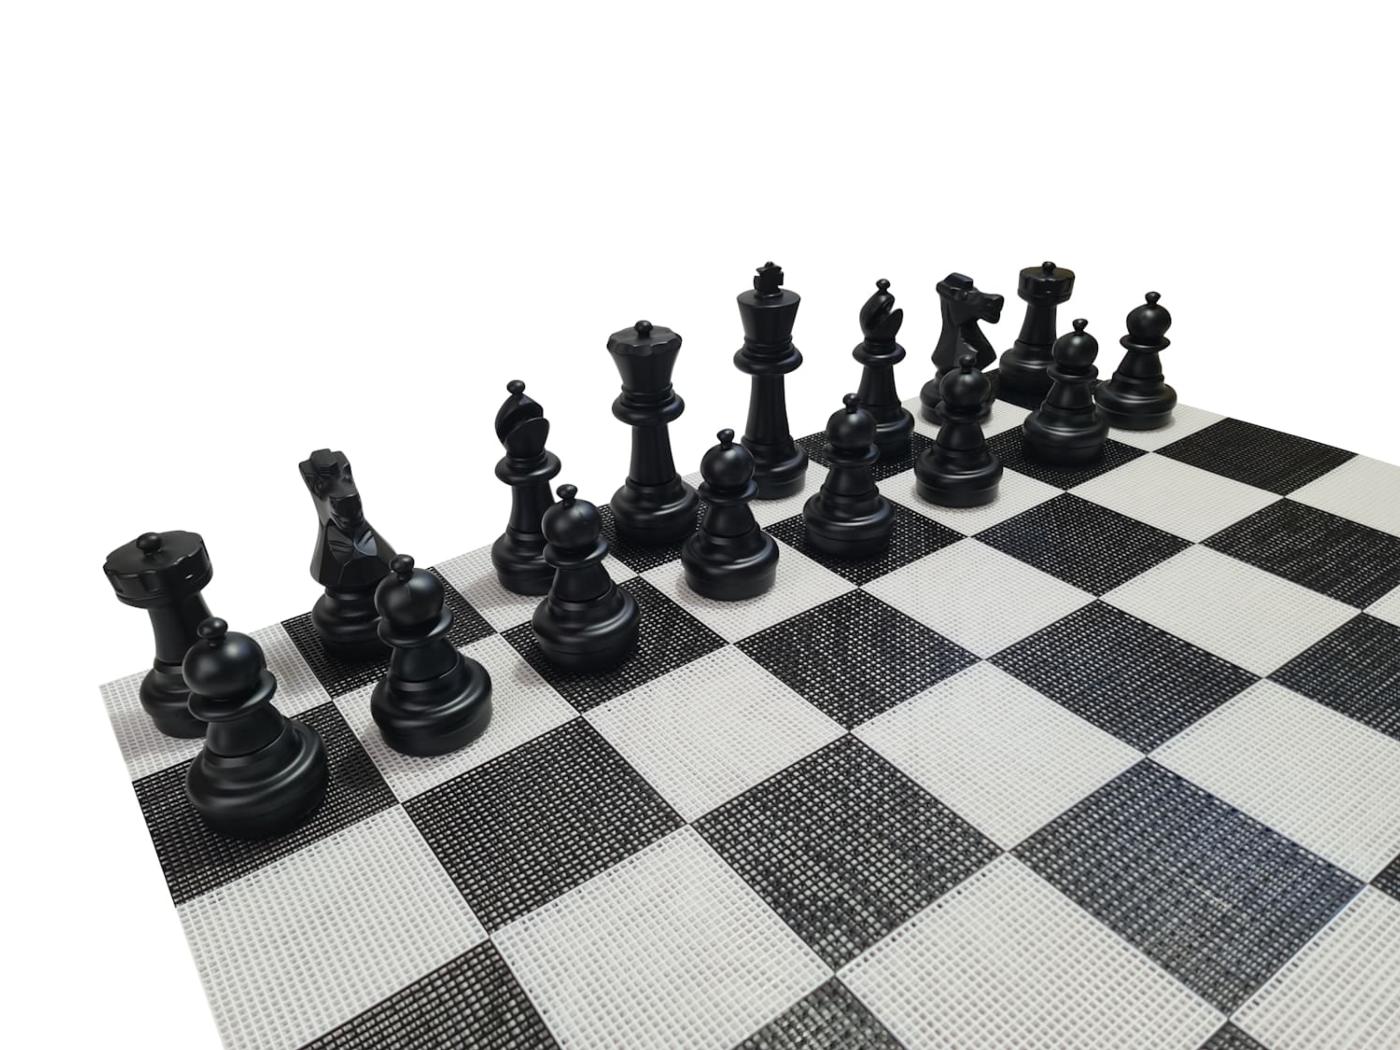 Juego de ajedrez gigante con tablero rígido gigante incluido piezas negras sobre tablero